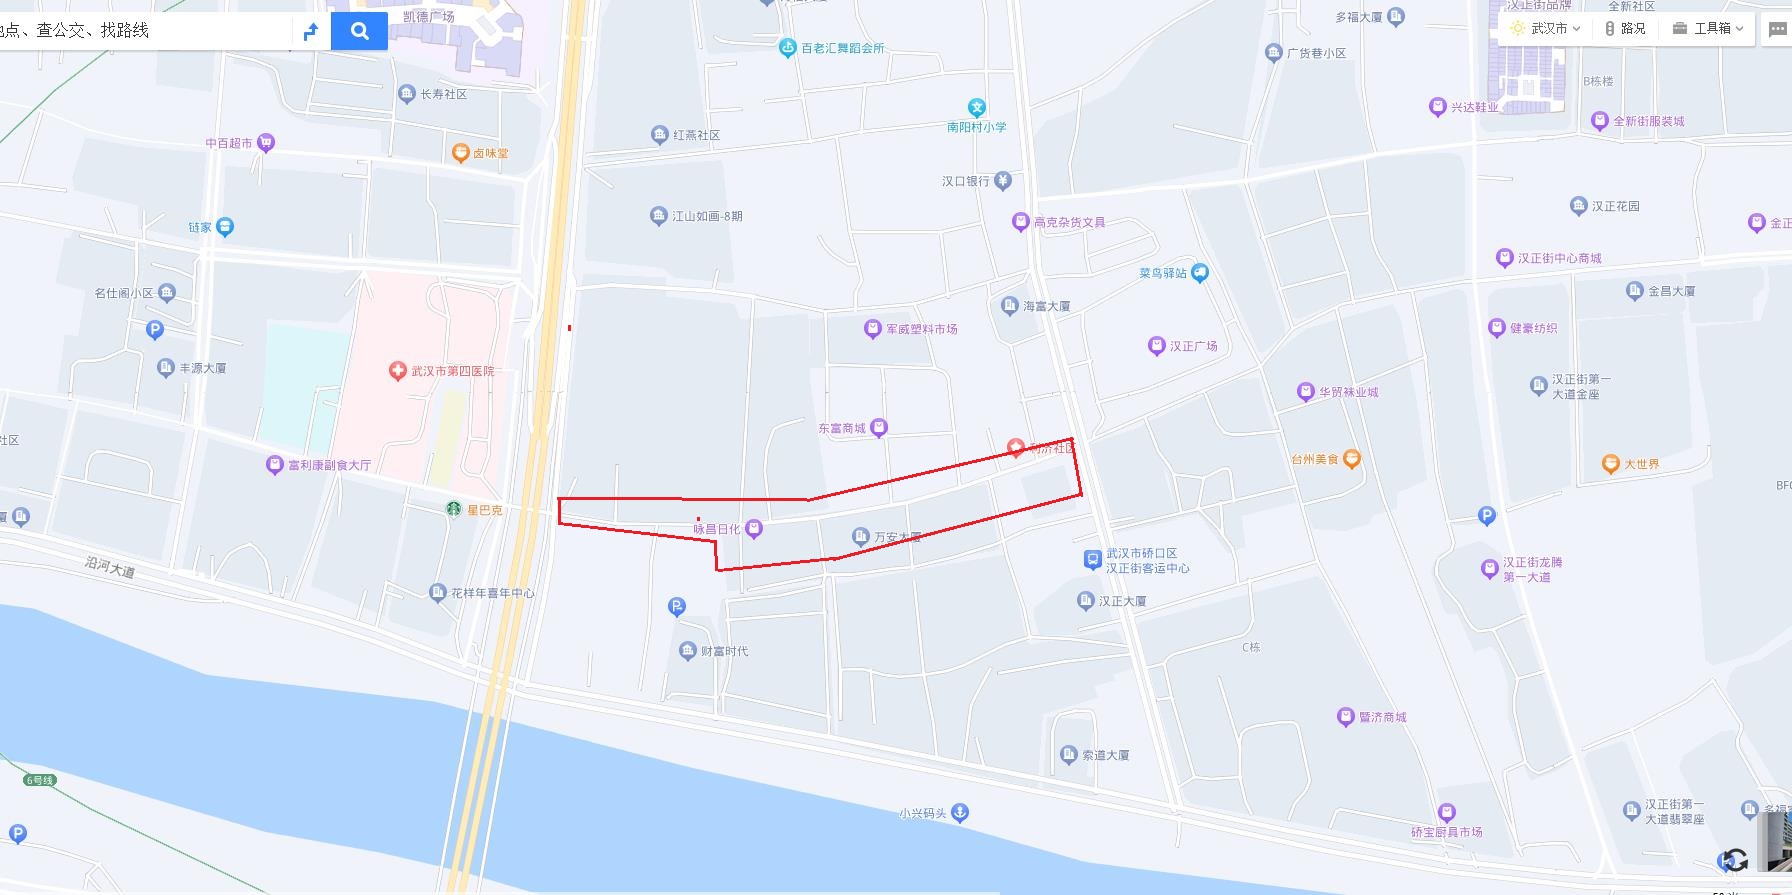 11月30日汉正街计划施工停水公告